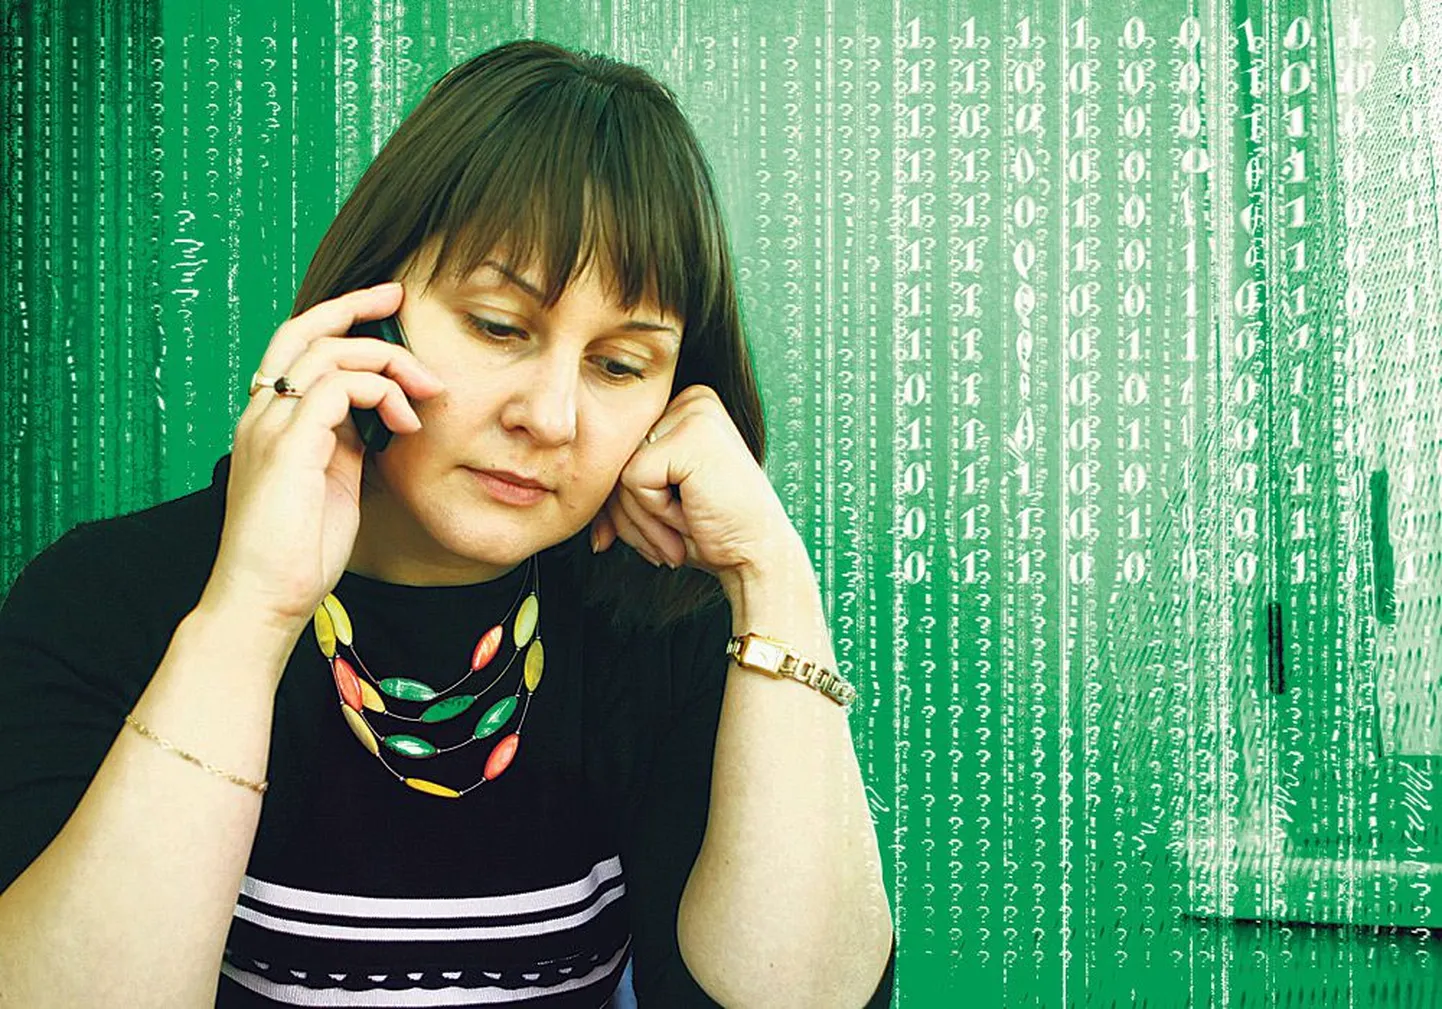 Докторант Тартуского Университета, журналист Postimees Марью Химма   слушает телефонного торговца и размышляет о том, откуда  им были получены ее персональные данные.